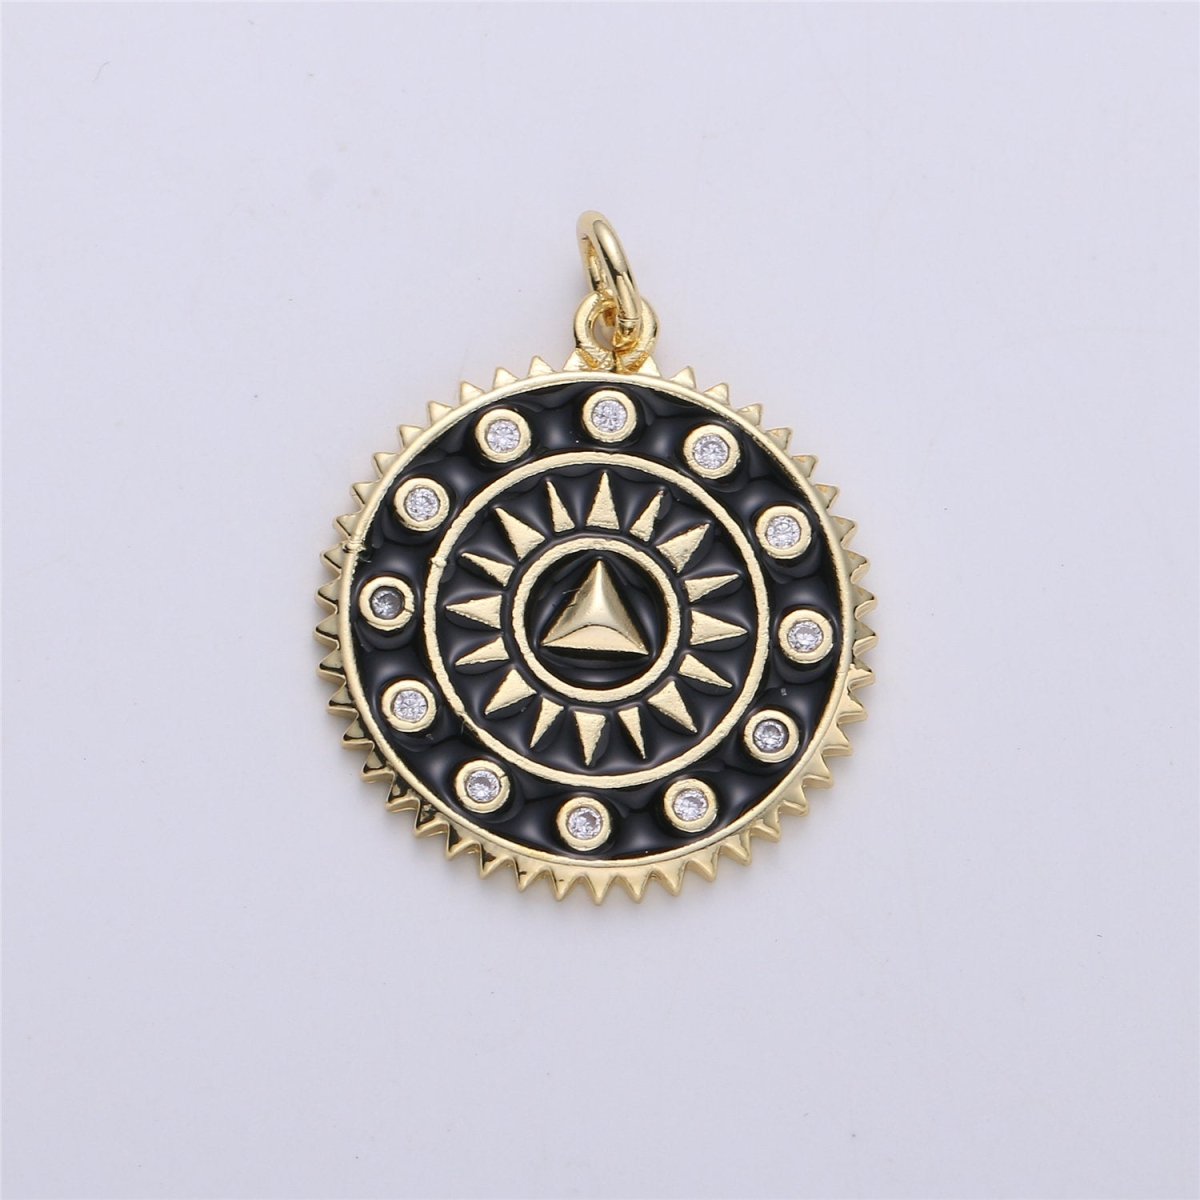 Enamel White and Black Medallion pendant, Coin charm, Gold fill SunBurst charm, 25x20mm C-611 - DLUXCA